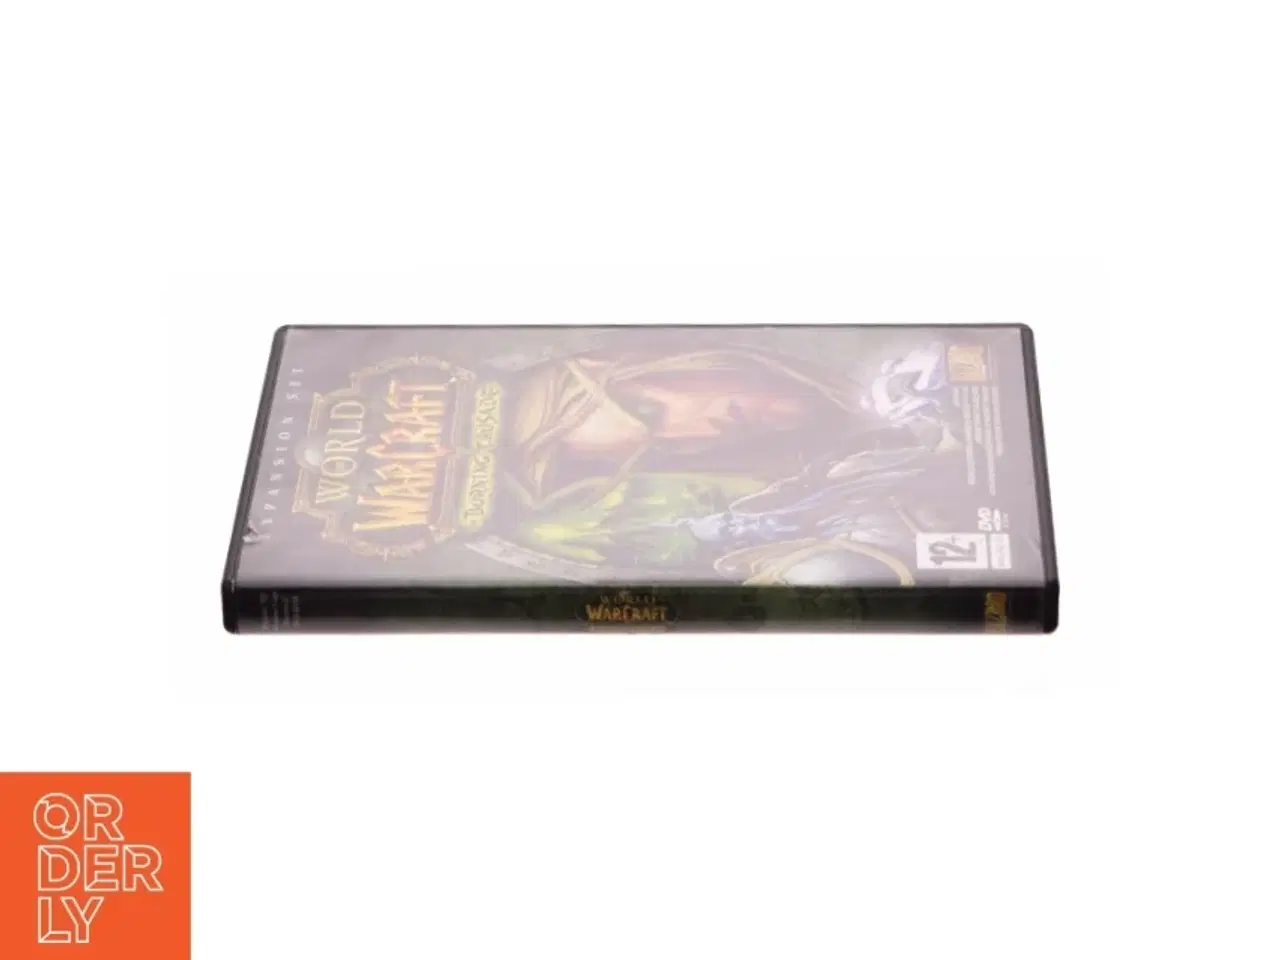 Billede 2 - World of Warcraft: Burning Crusade fra DVD